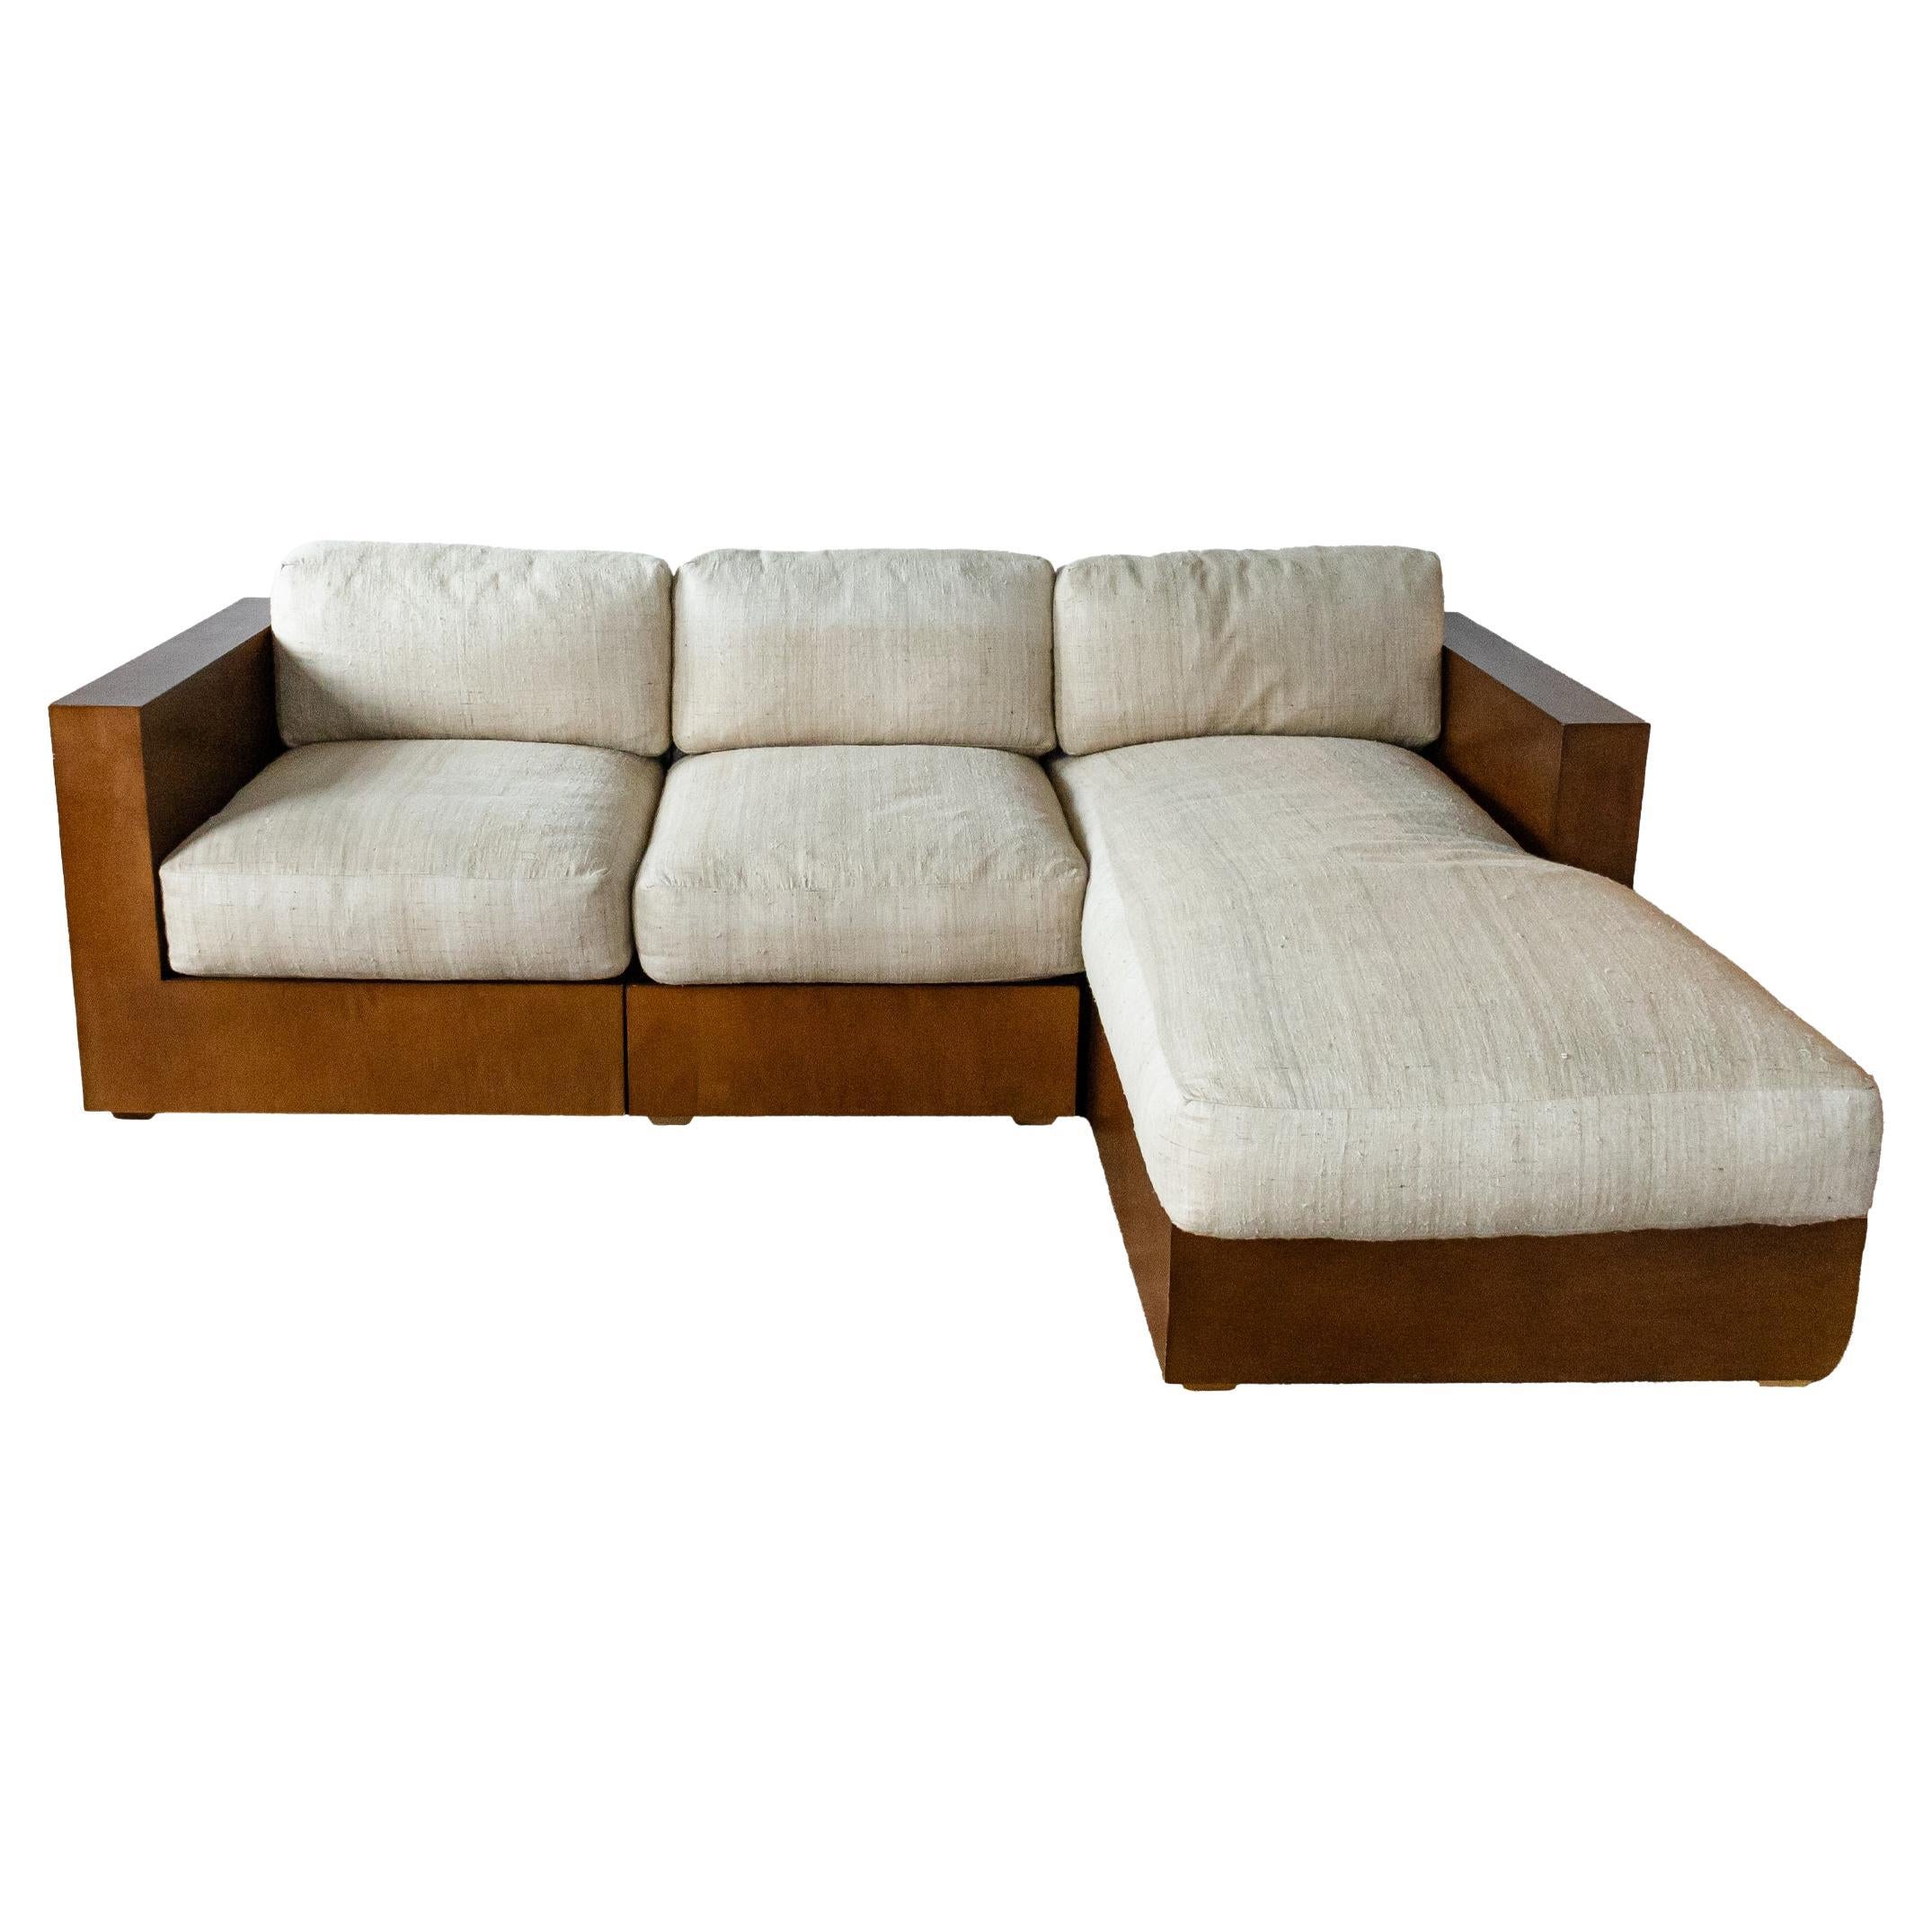 Contemporary Modern Ralph Lauren Walnut Wood 3 Piece Modular Sectional Sofa For Sale